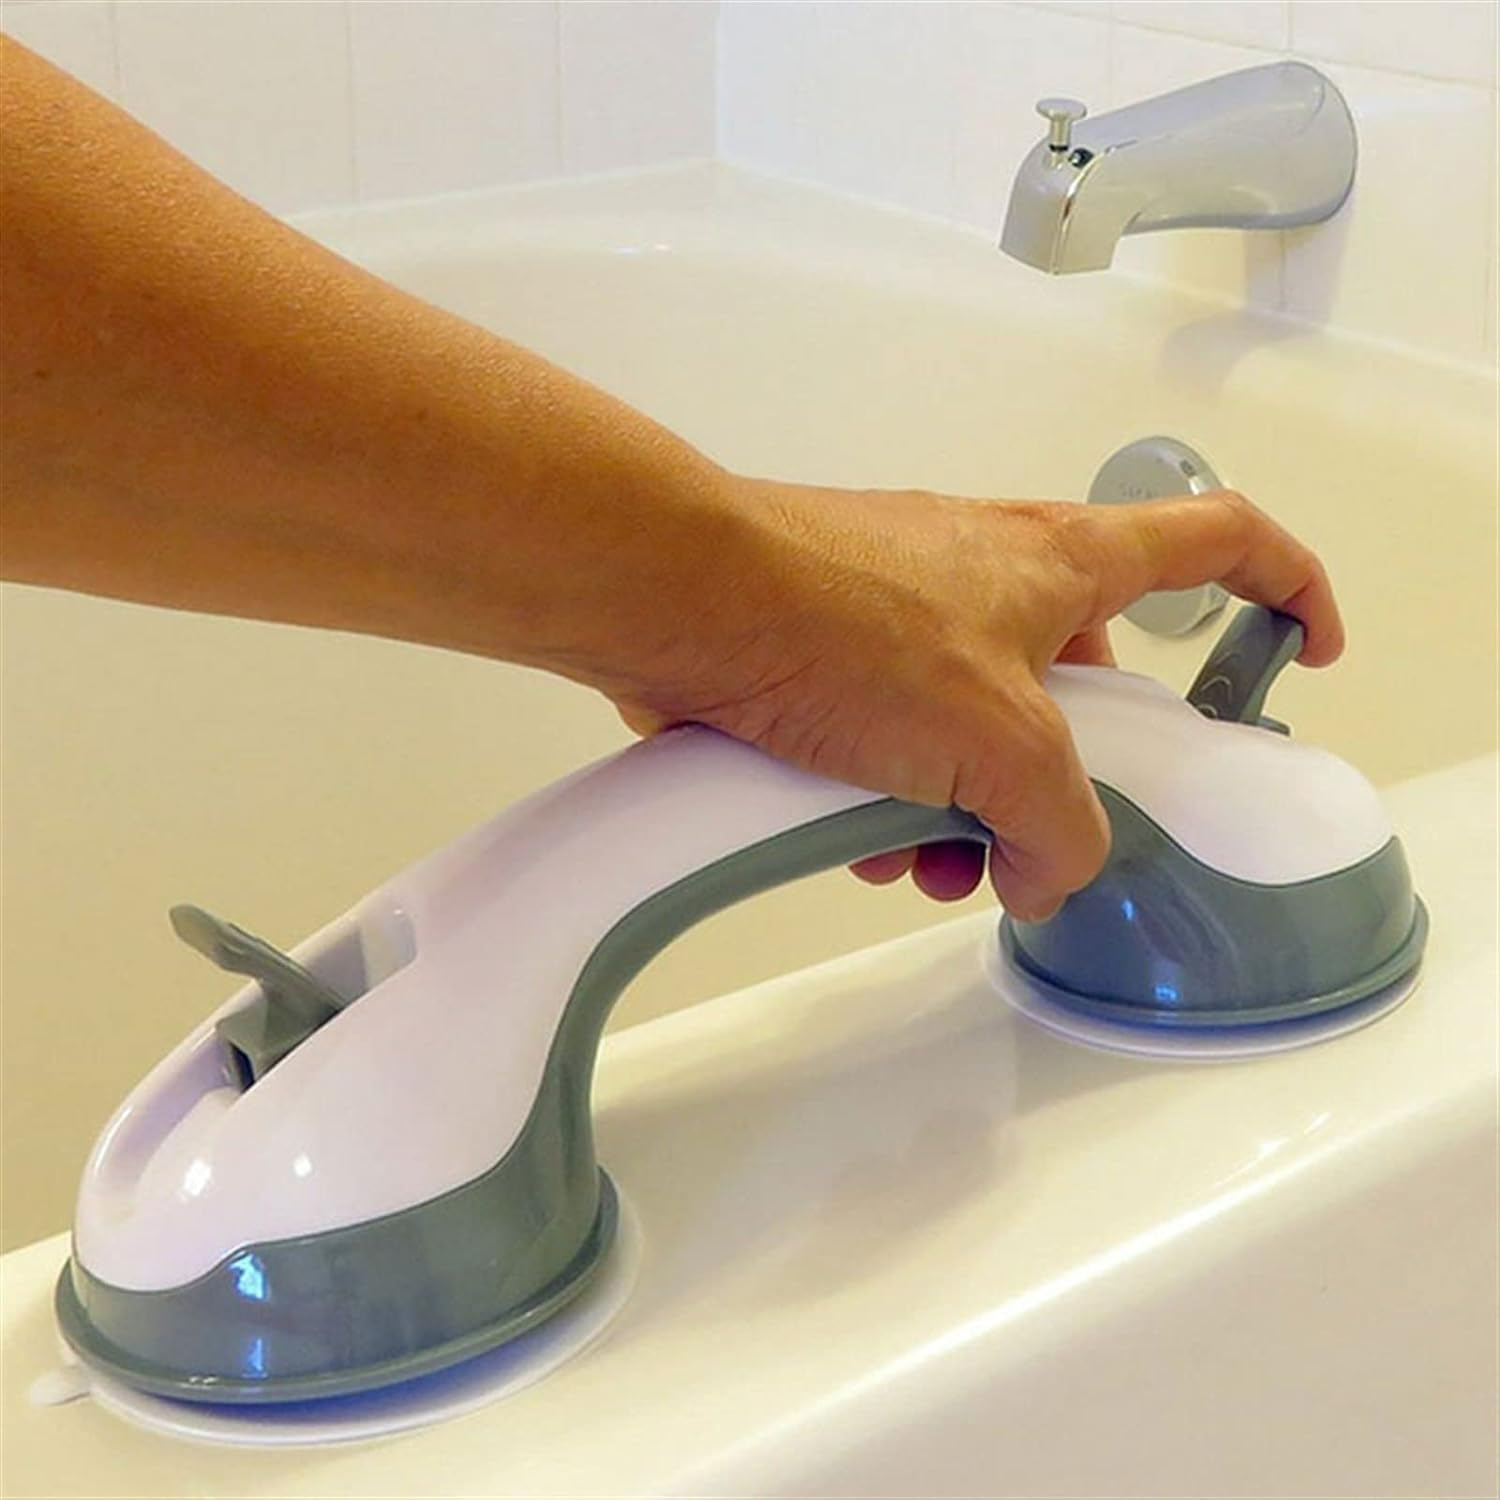 ShowerHandle® | Saugnapf-Handläufe